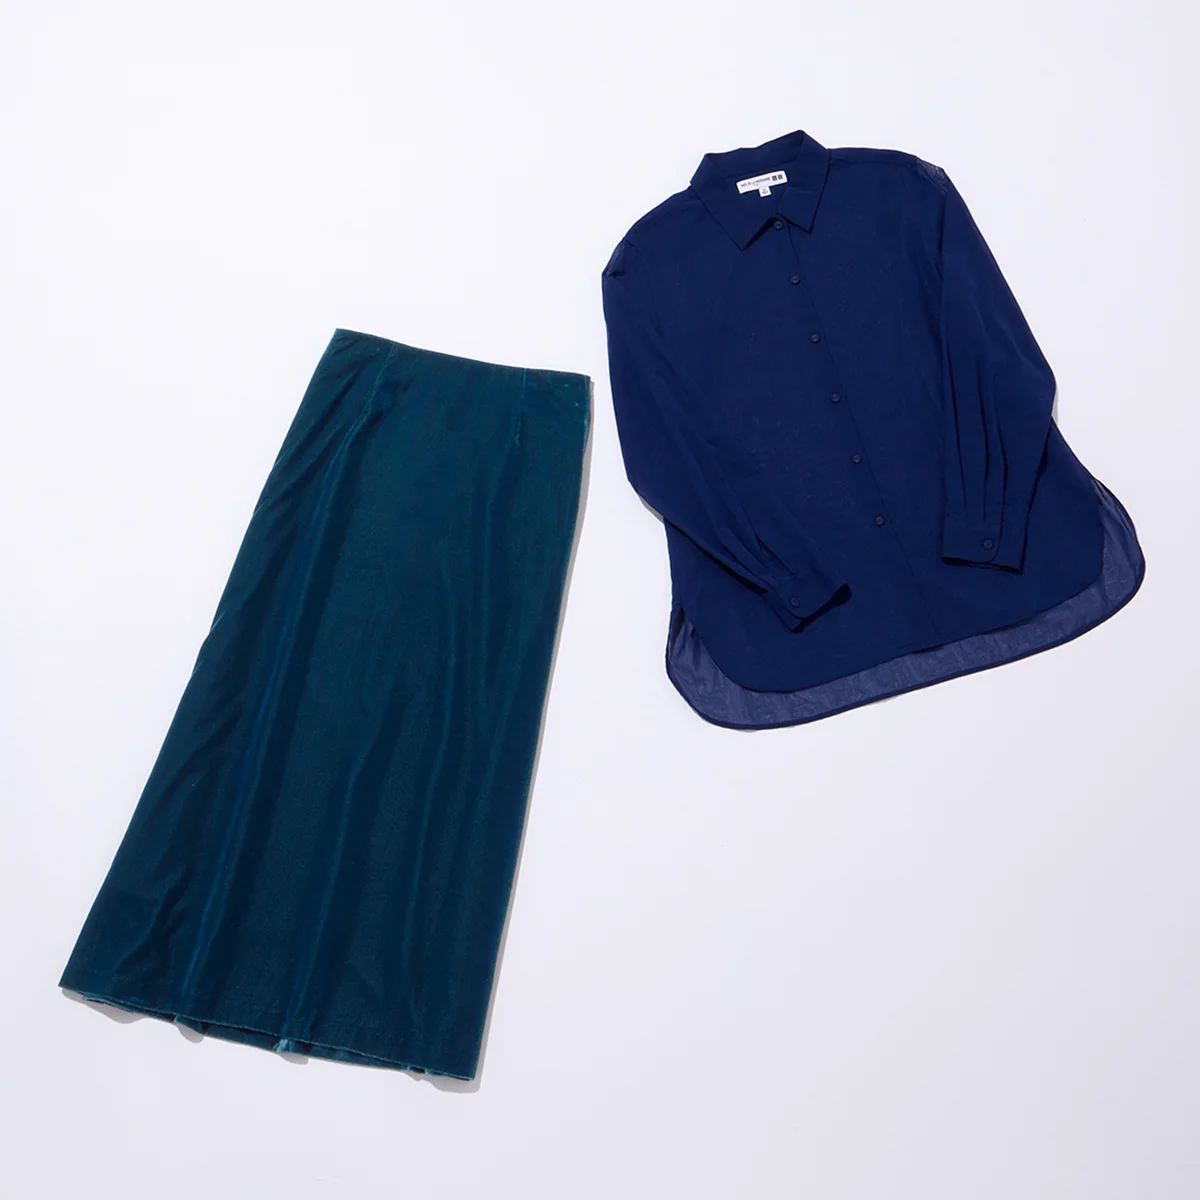 イネス・ド・ラ・フレサンジュのシャツとスカート